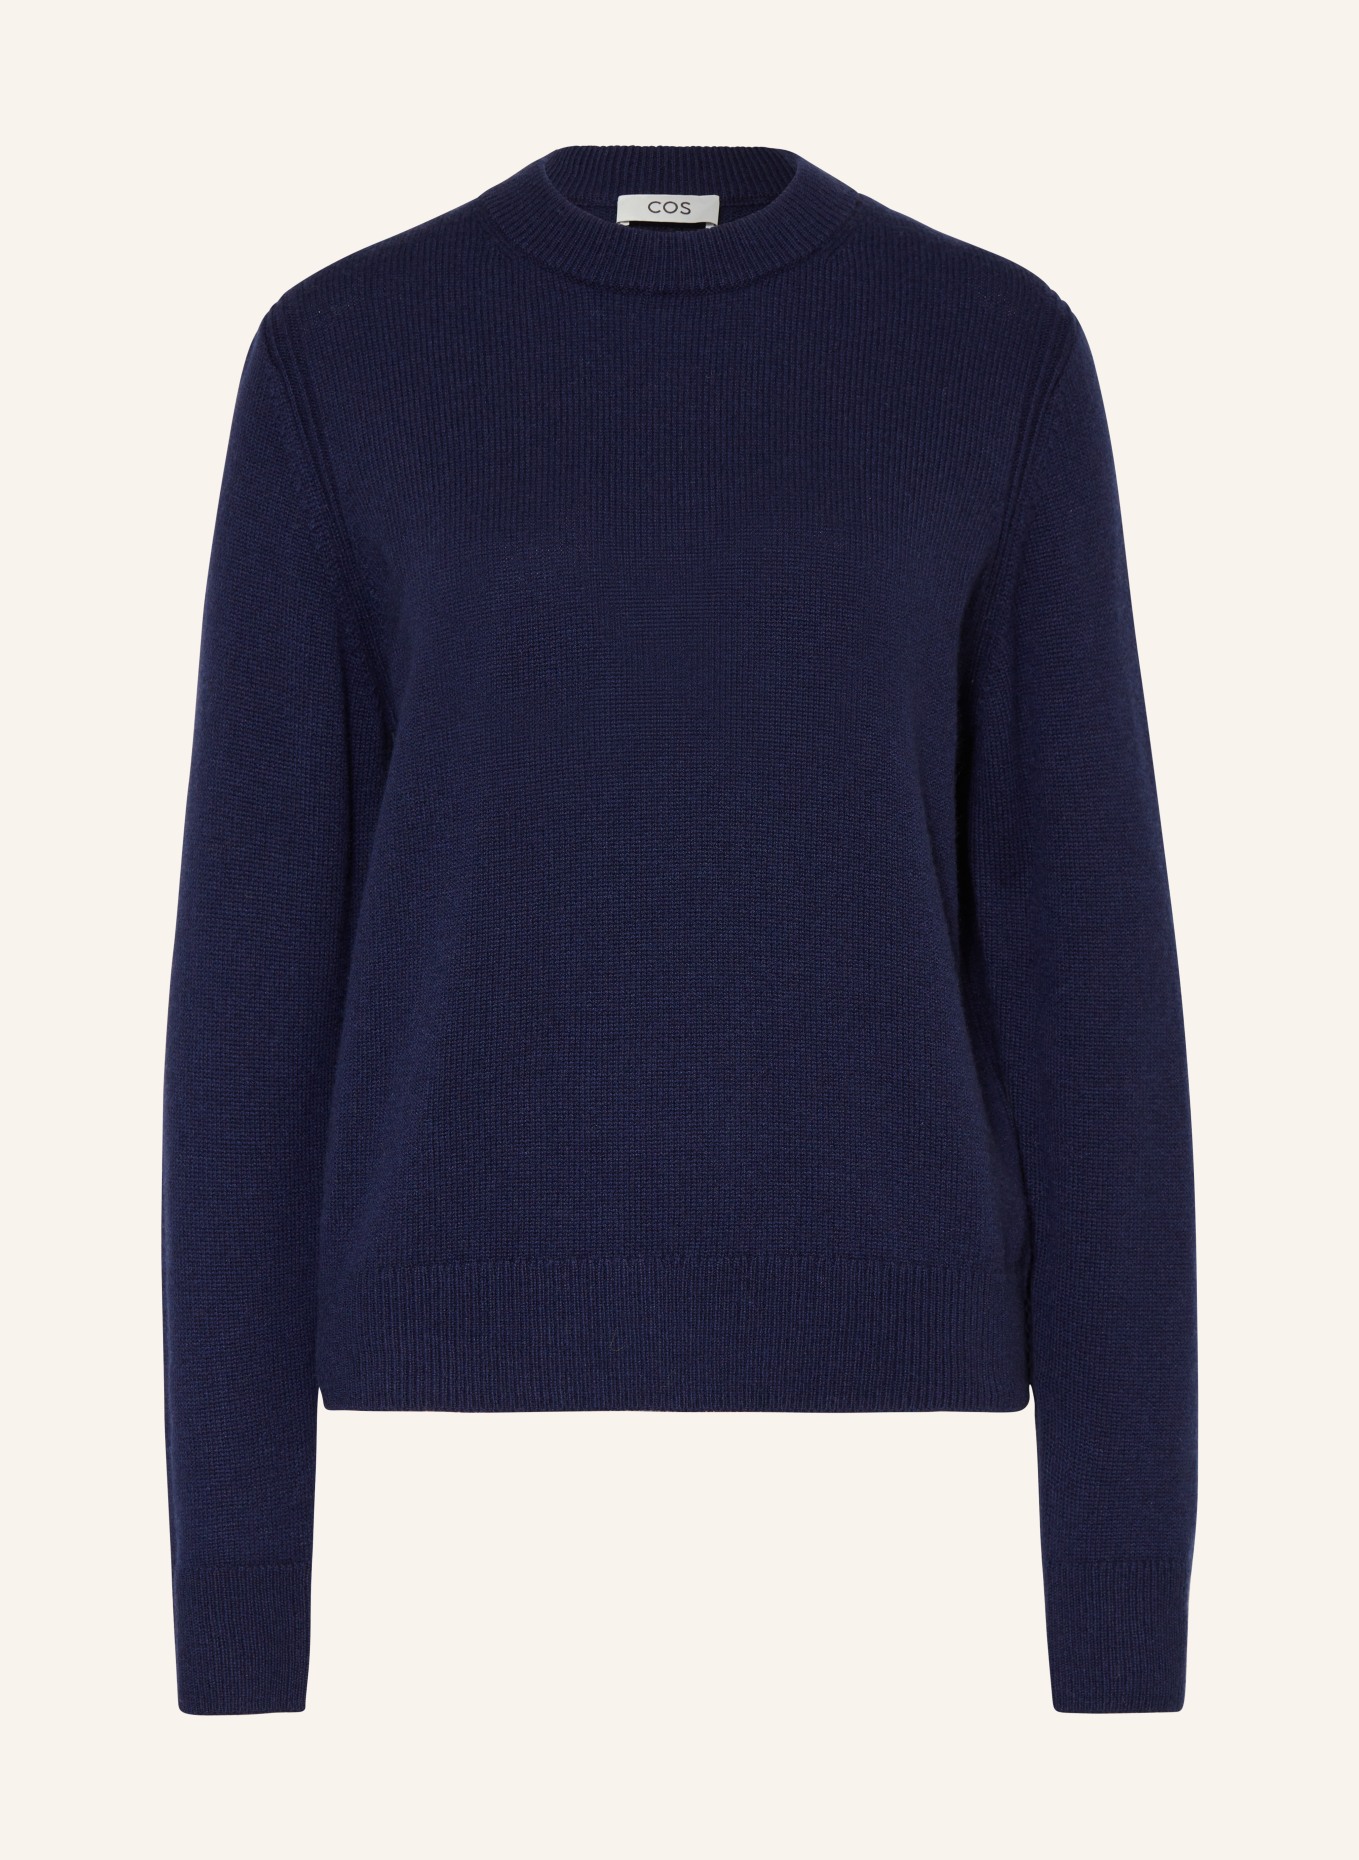 COS Cashmere-Pullover, Farbe: DUNKELBLAU (Bild 1)